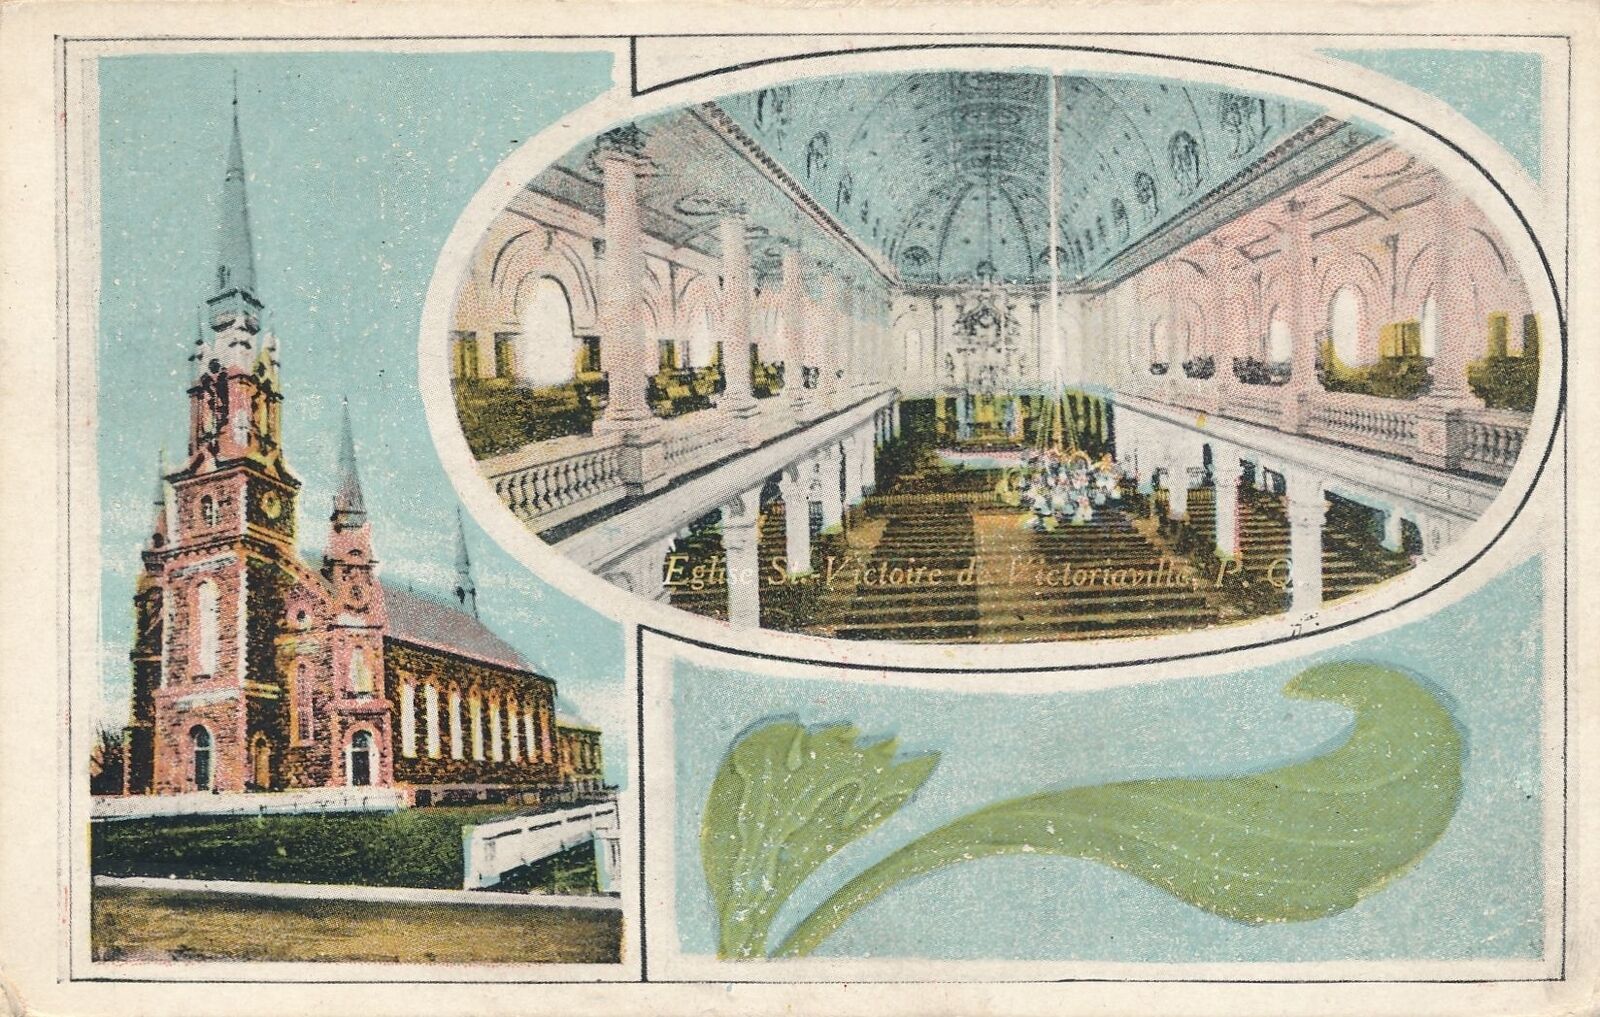 VICTORIAVILLE QC - Eglise St. Victoire de Victoriaville Postcard - 1925